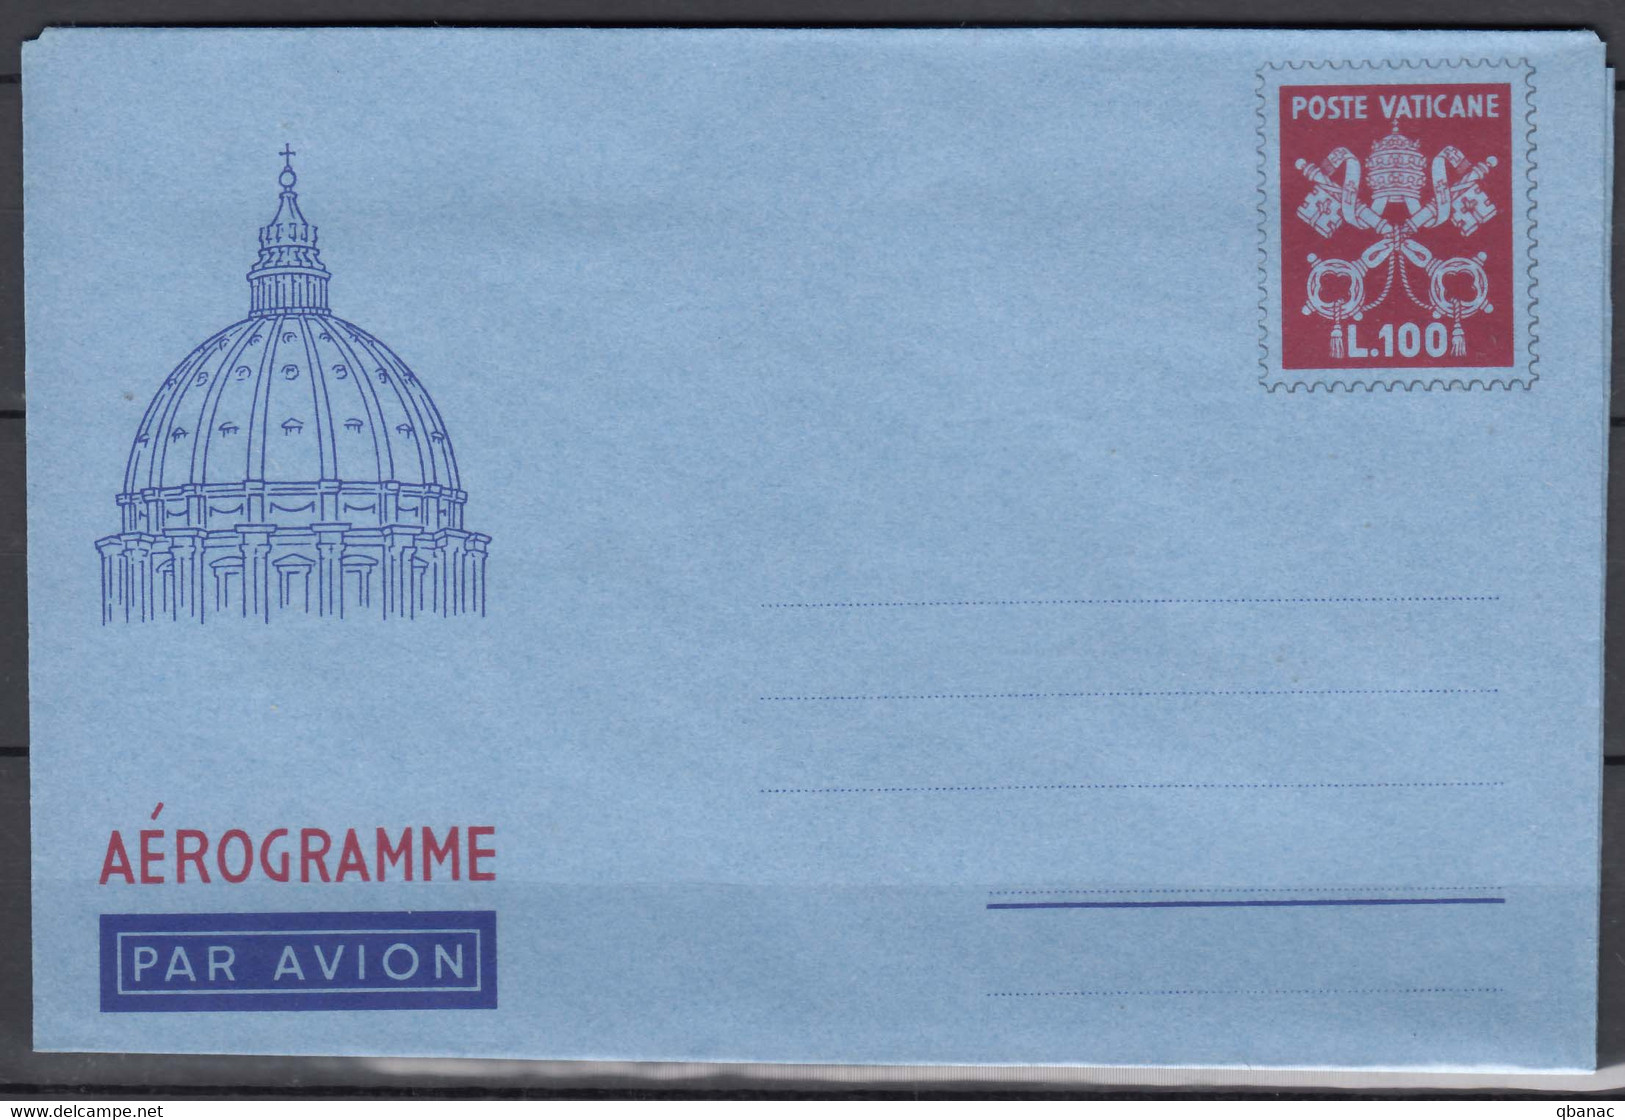 Vatican Aerogramme, Aerogramma 100 Lire In Excellent Mint State - Ganzsachen